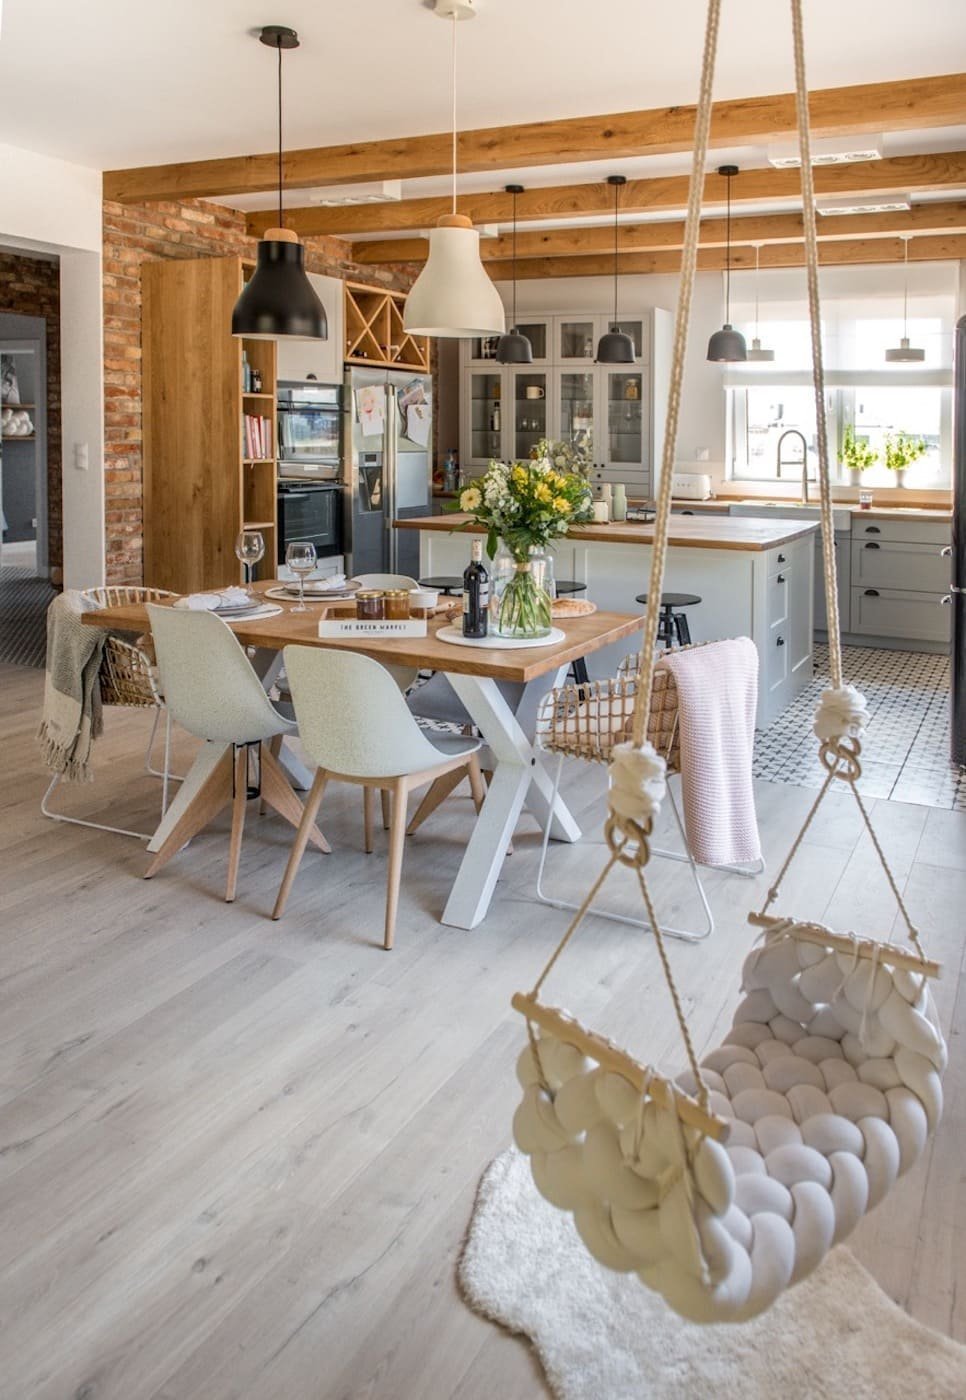 Nový domov v eklektickém stylu s nádechem Skandinávie